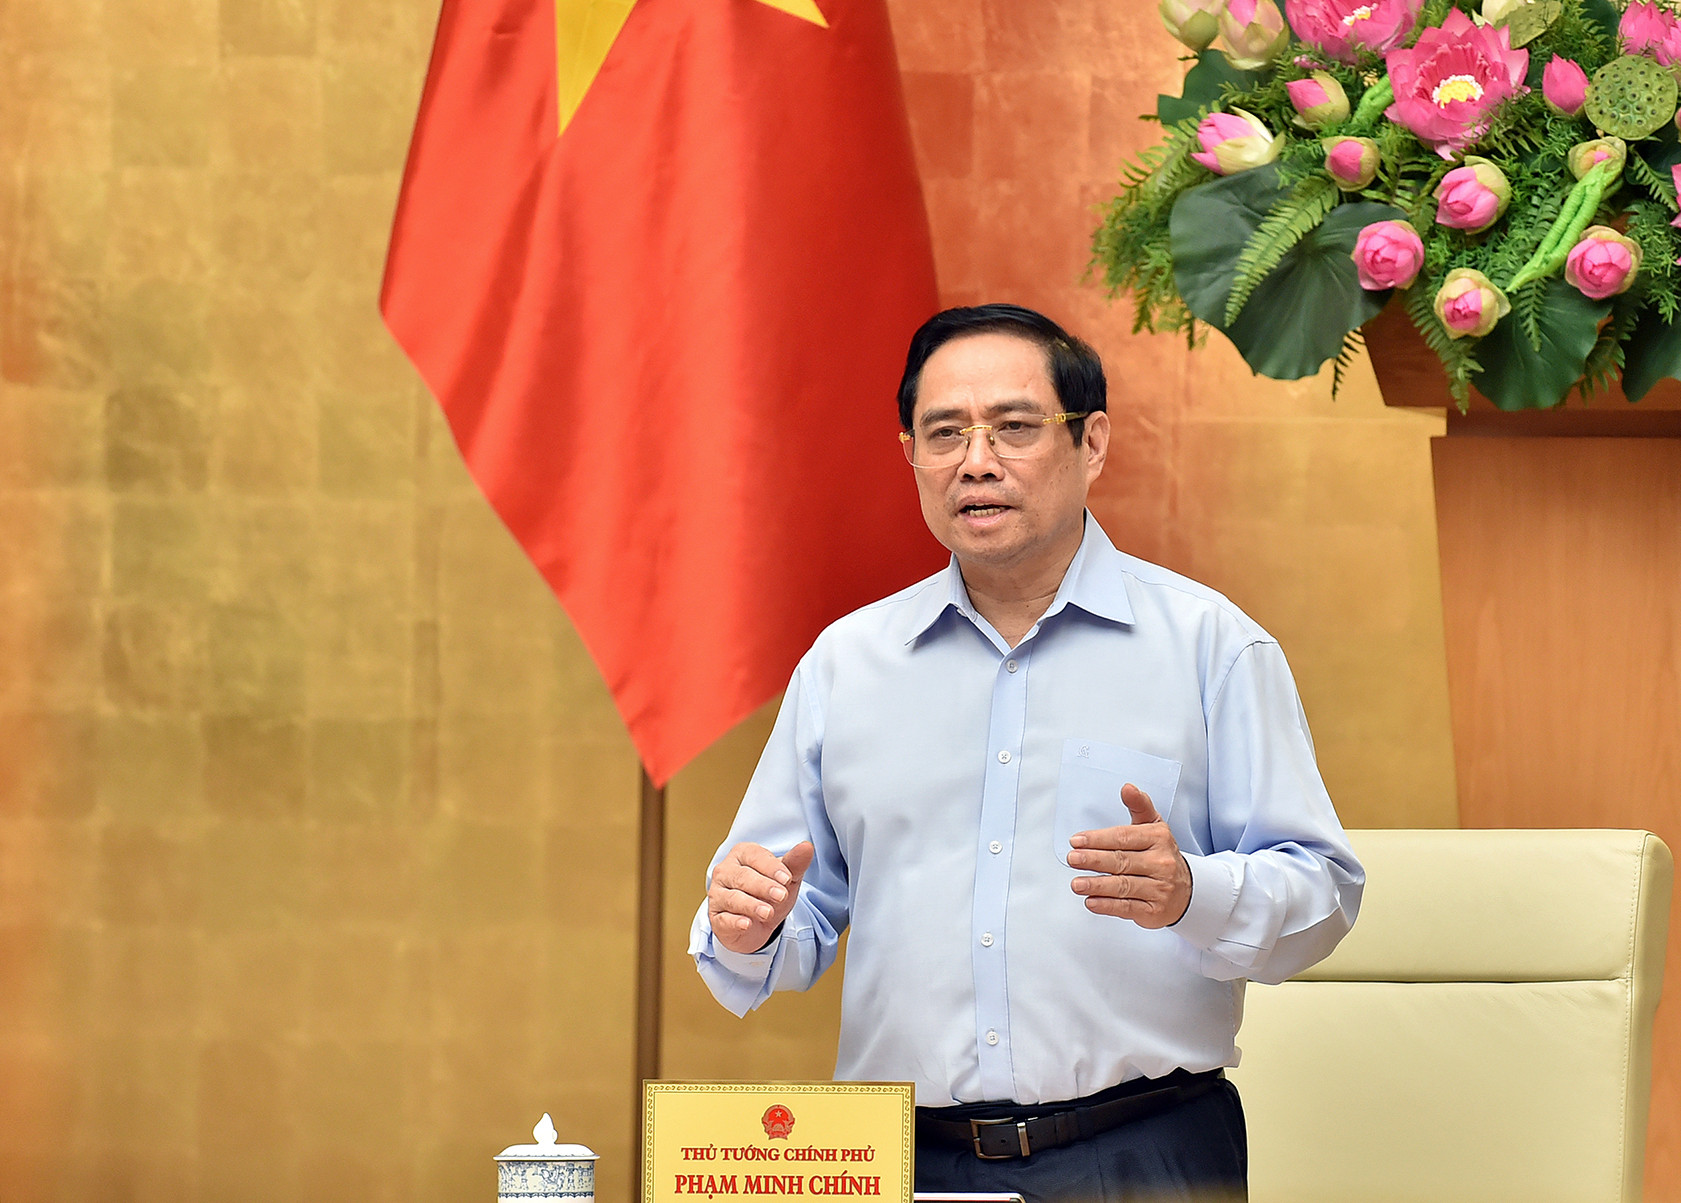 Thủ tướng Phạm Minh Chính: Dành tất cả những gì tốt nhất cho TPHCM ƈhốɴg dįсһ - Kiểm Sát Online